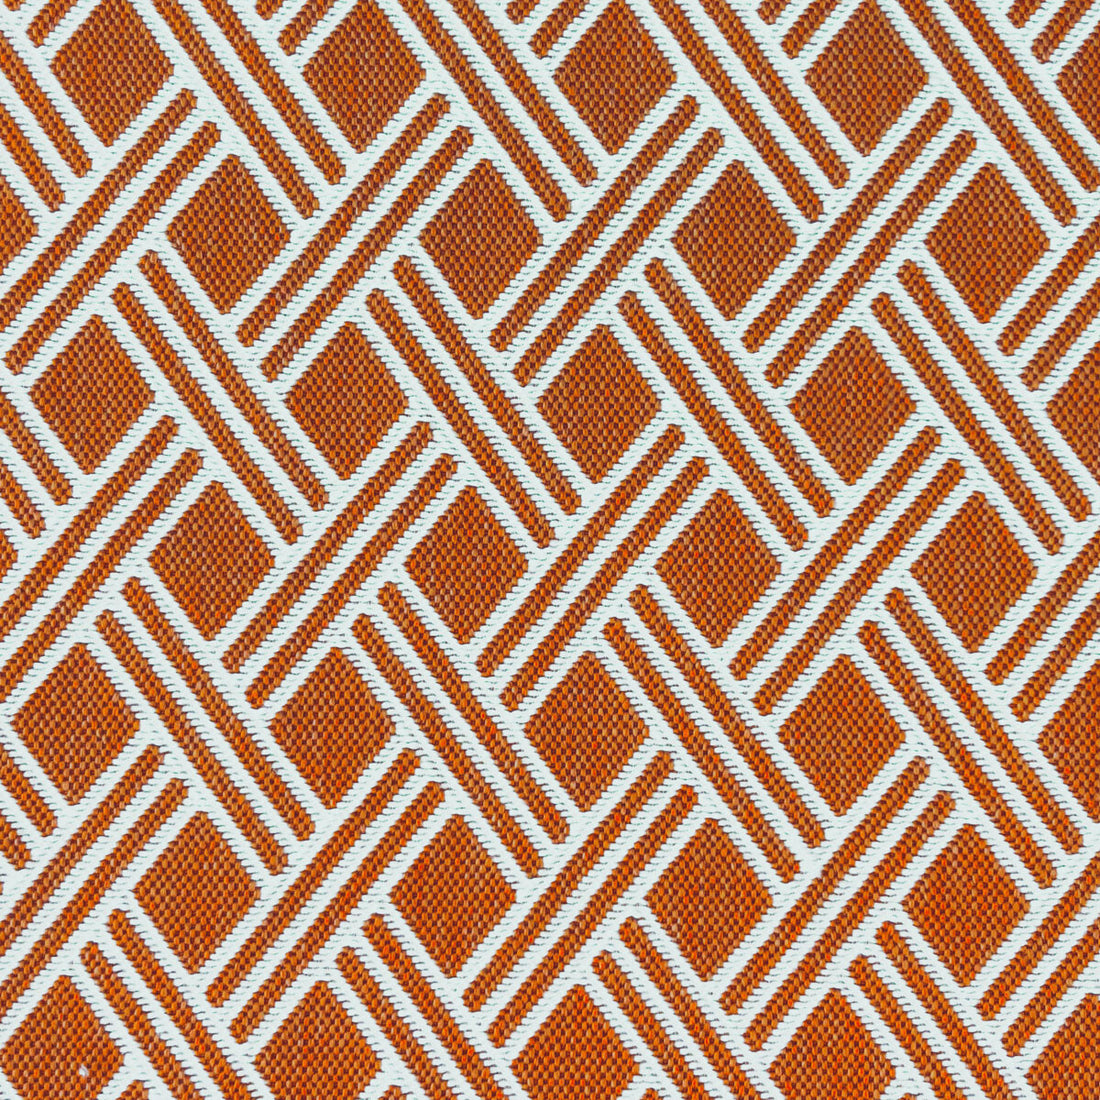 Dorcas fabric in teja color - pattern LCT1060.004.0 - by Gaston y Daniela in the Lorenzo Castillo VI collection